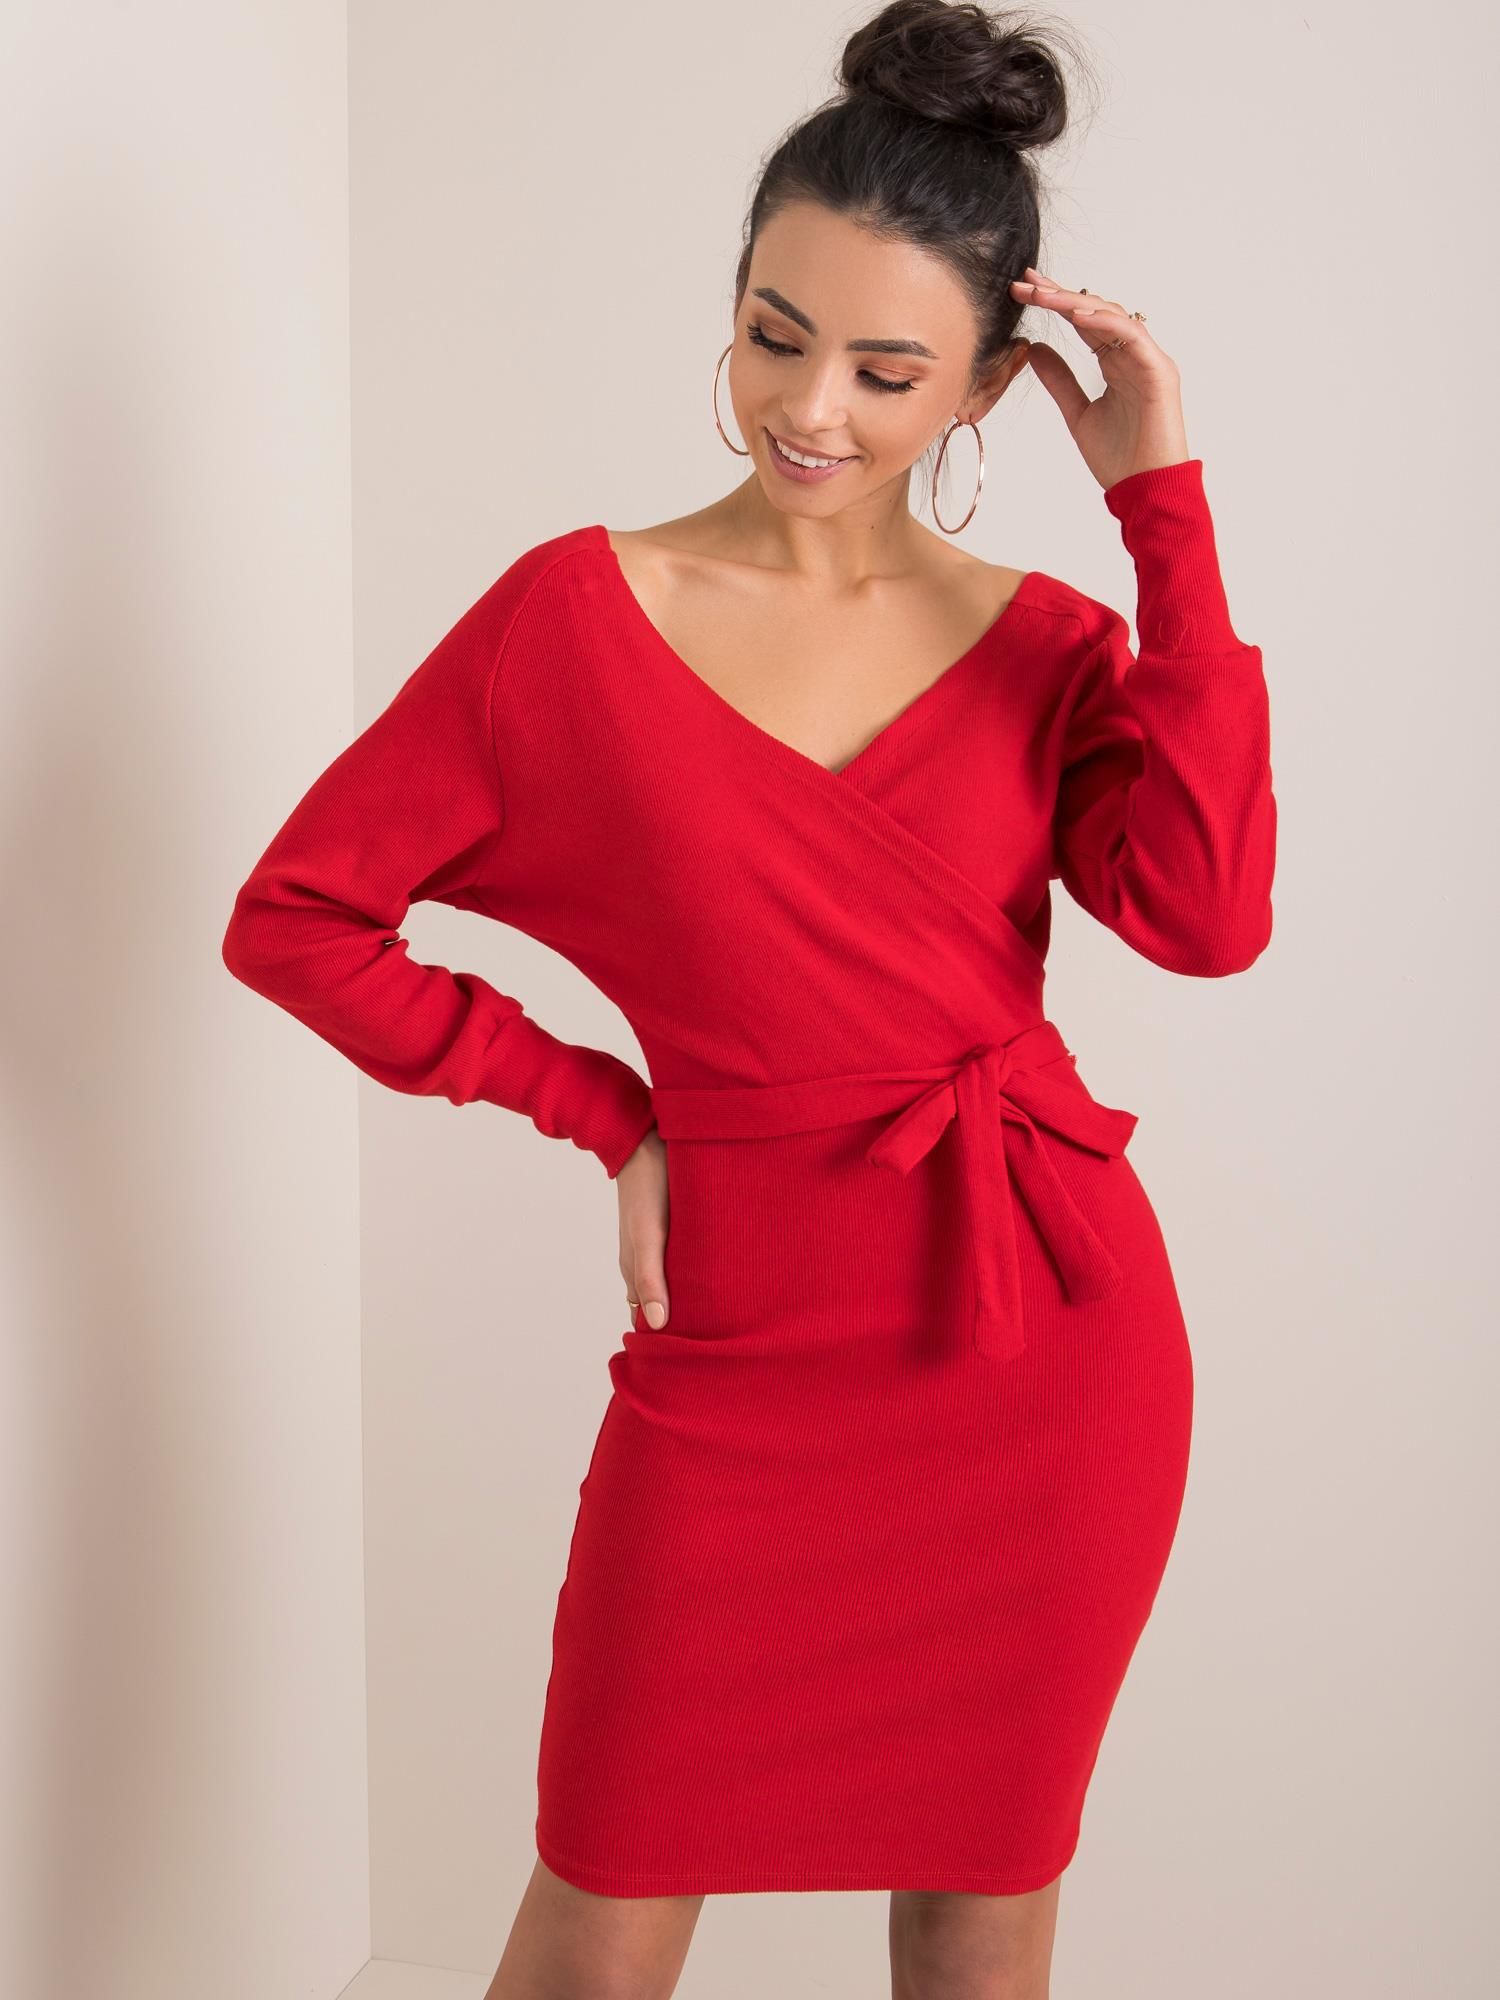 Dámské červené šaty s páskem RV-SK-5297.23P-red Velikost: L